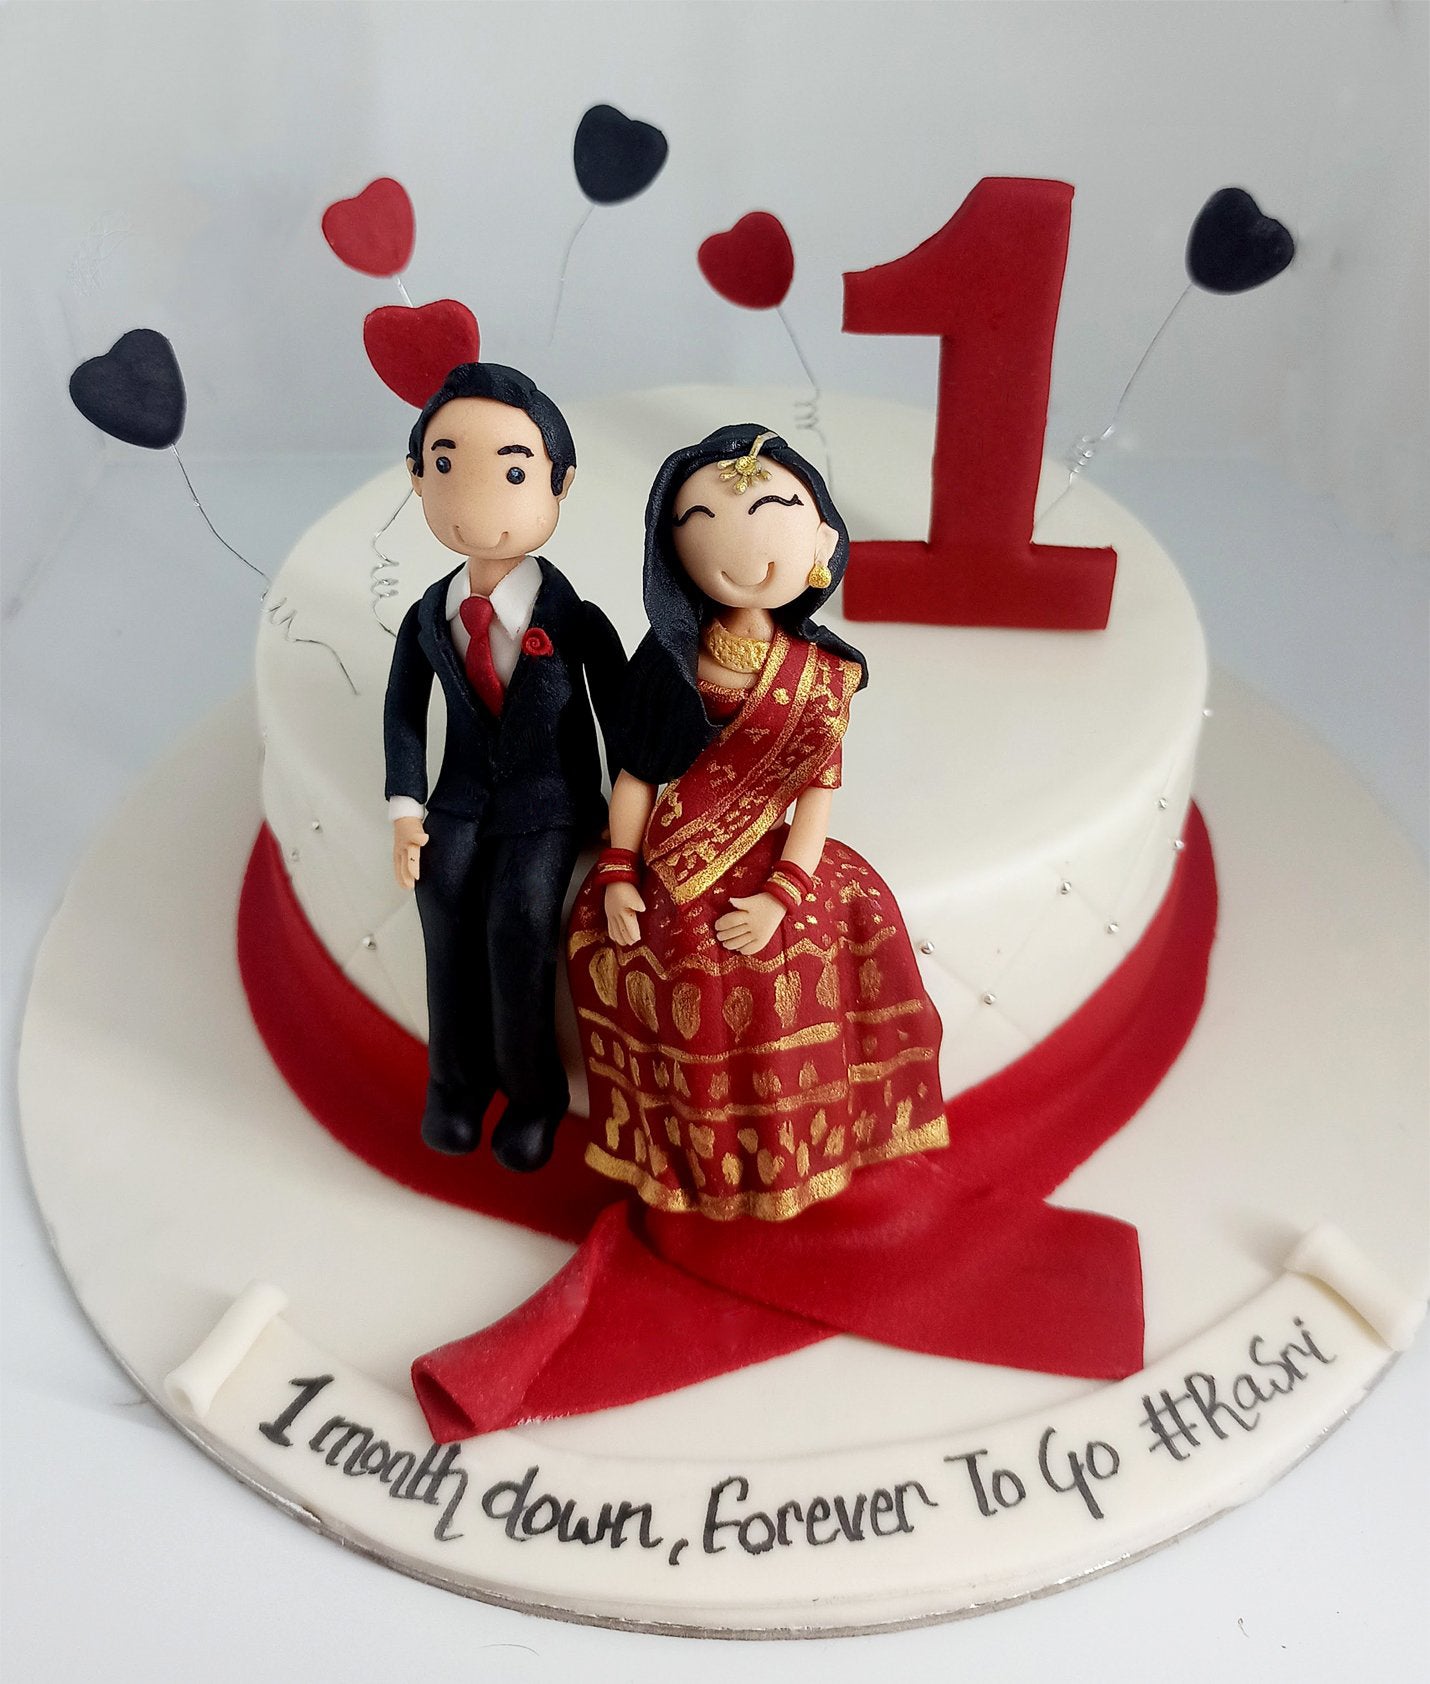 Blog | Amazing Wedding Cake Ideas For The Outdoorsy Couple